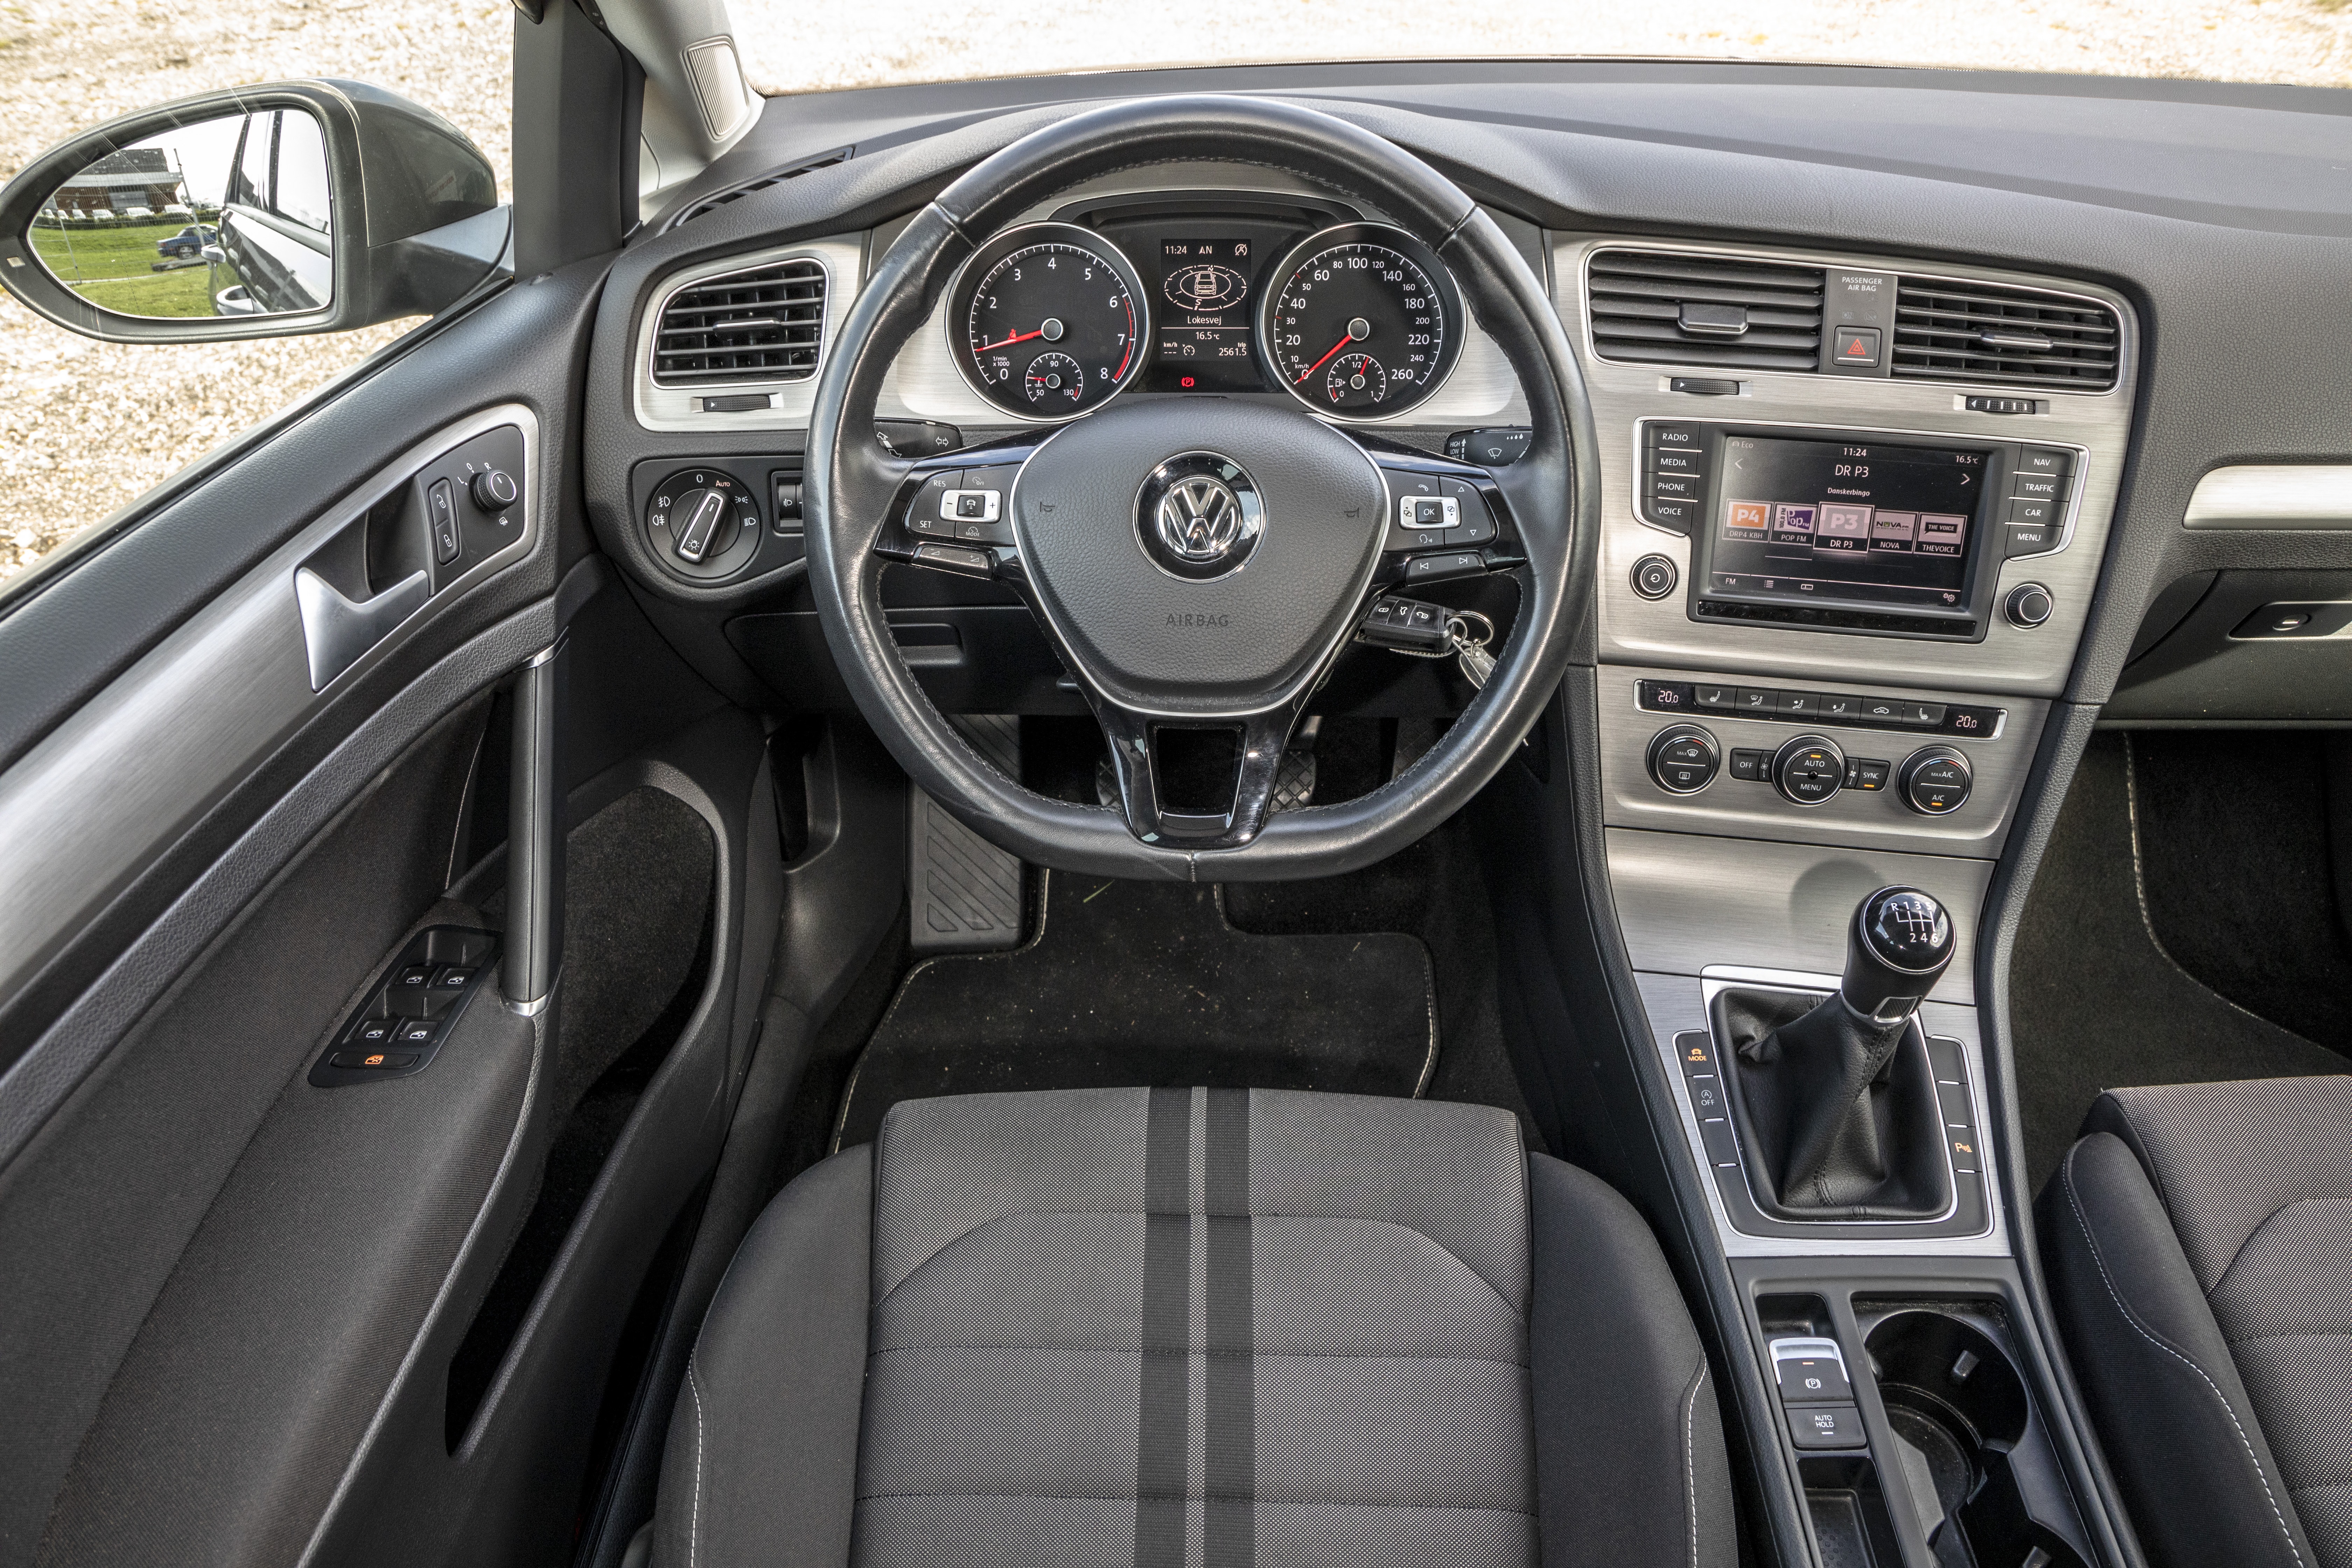 Guide til køb af VW Golf 7 - Bilbasen blog